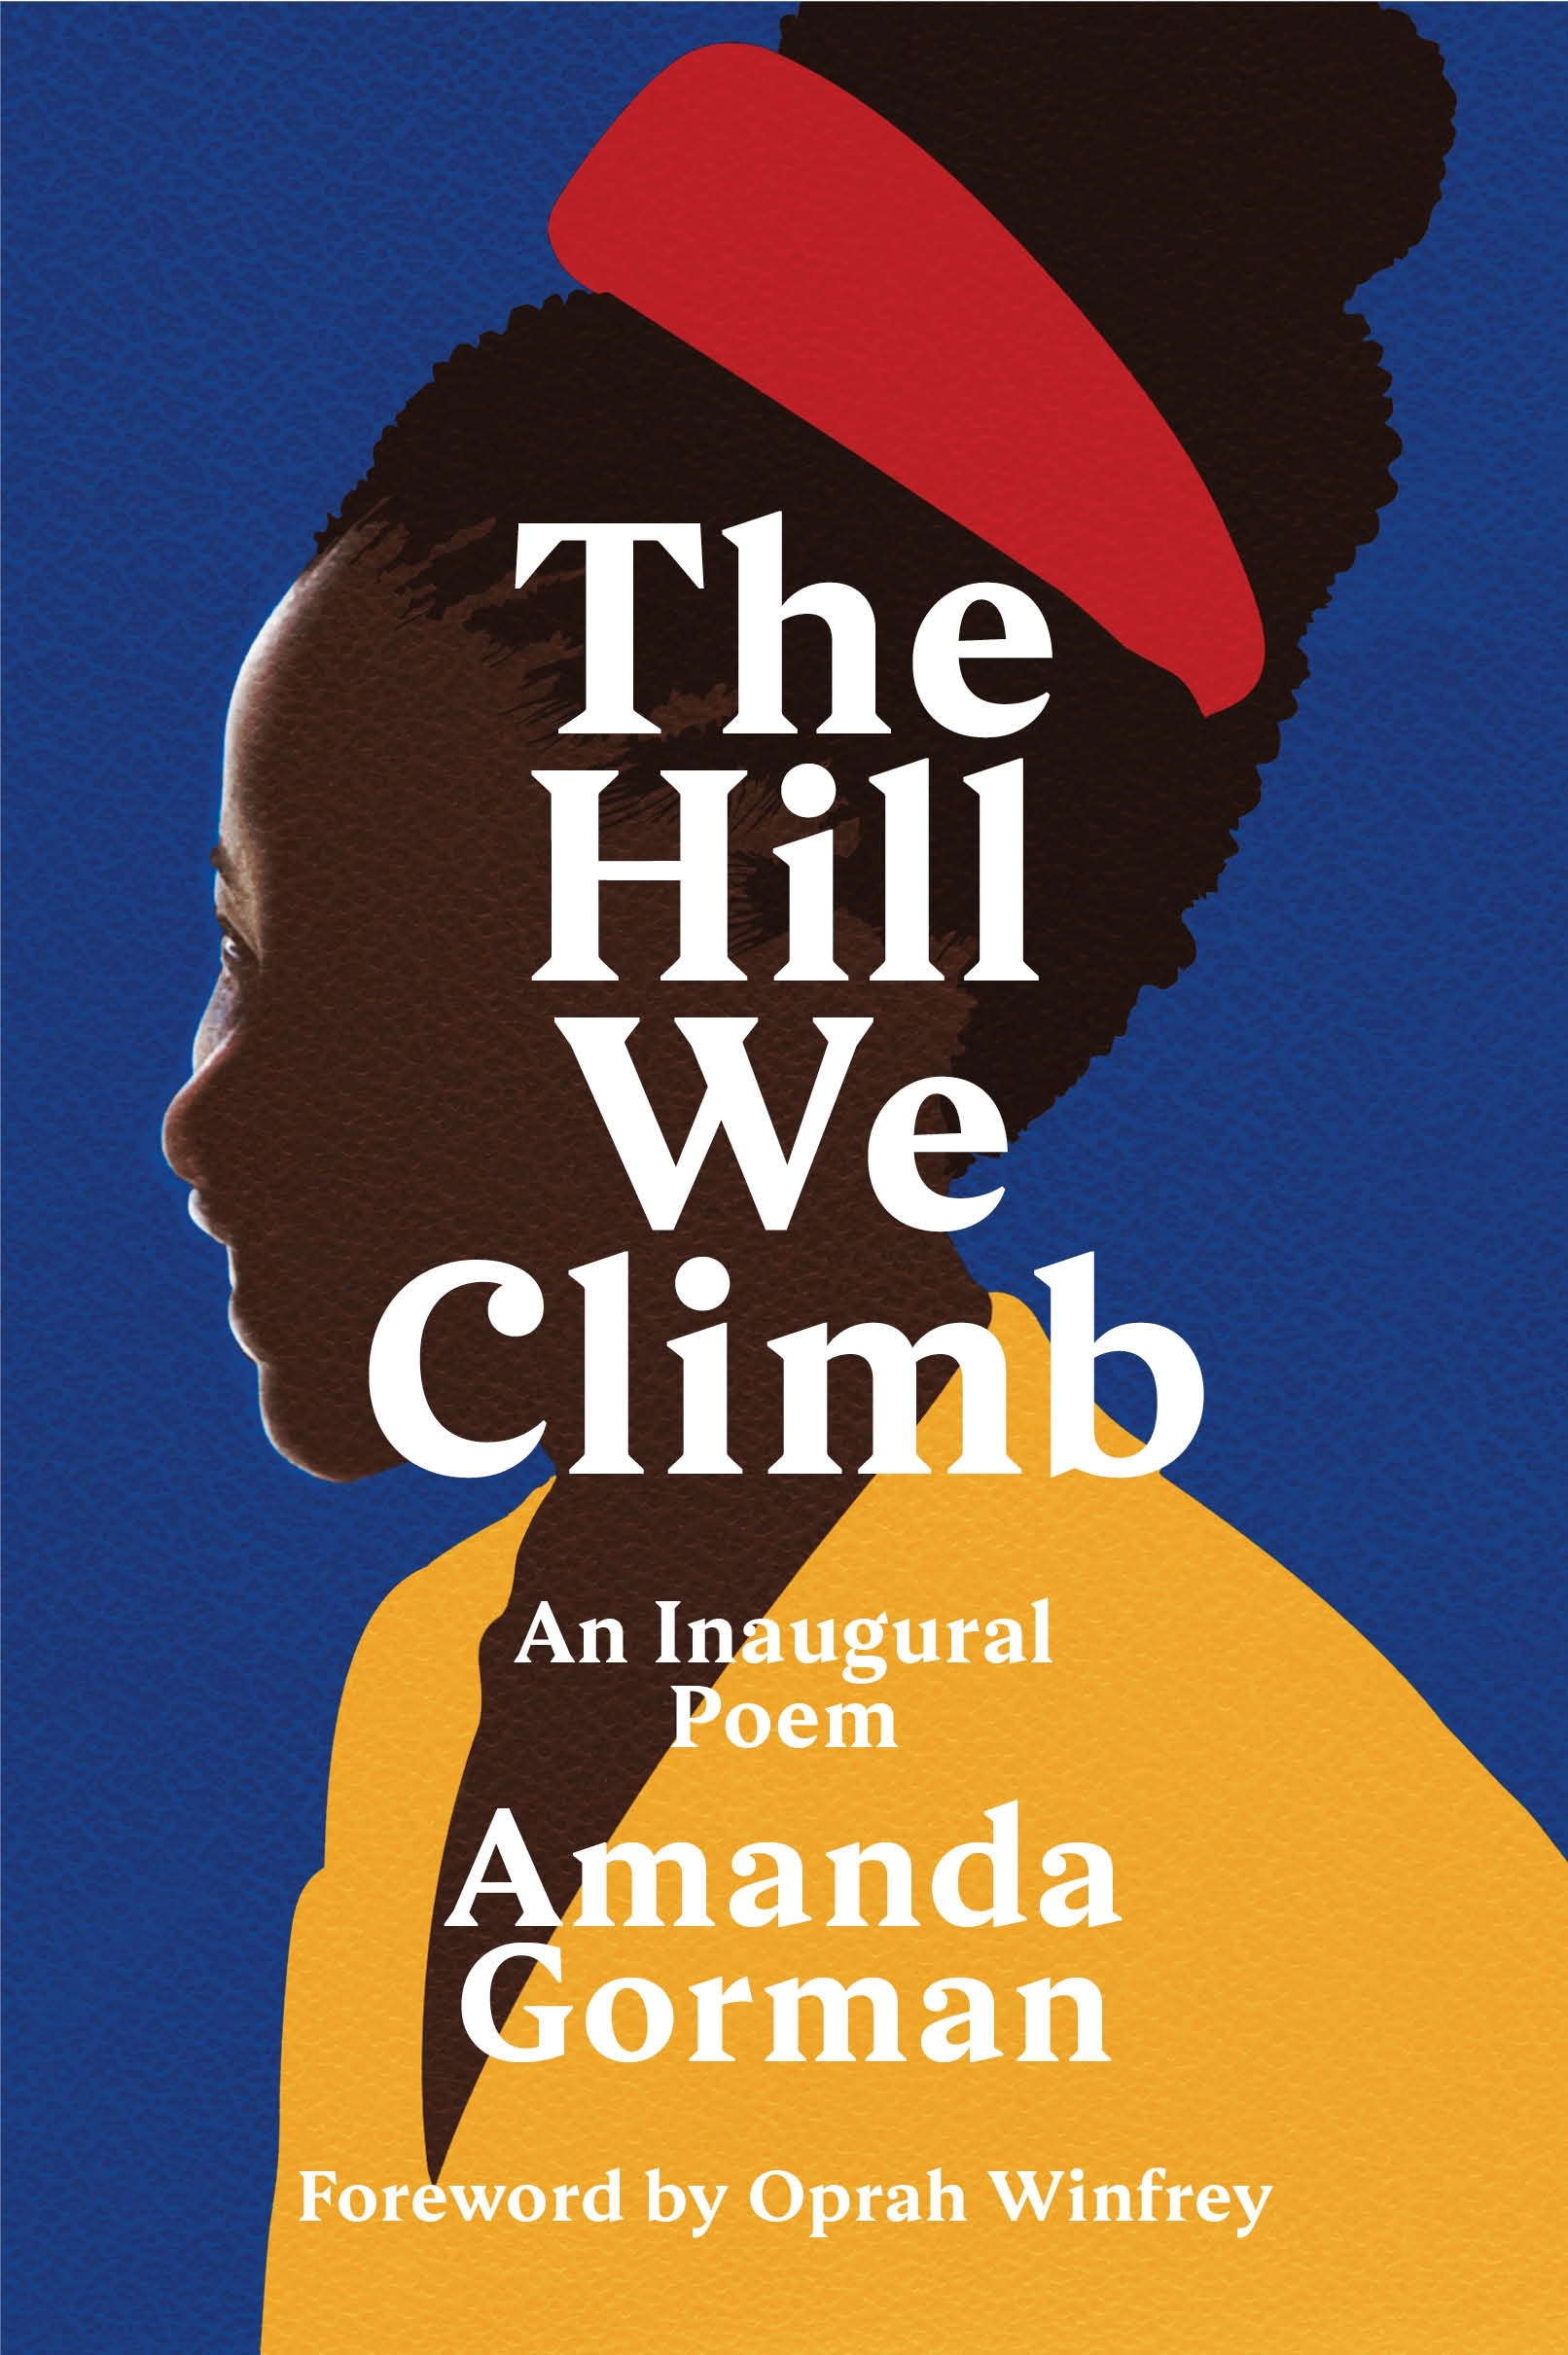 Book “The Hill We Climb” by Amanda Gorman, Oprah Winfrey — March 30, 2021